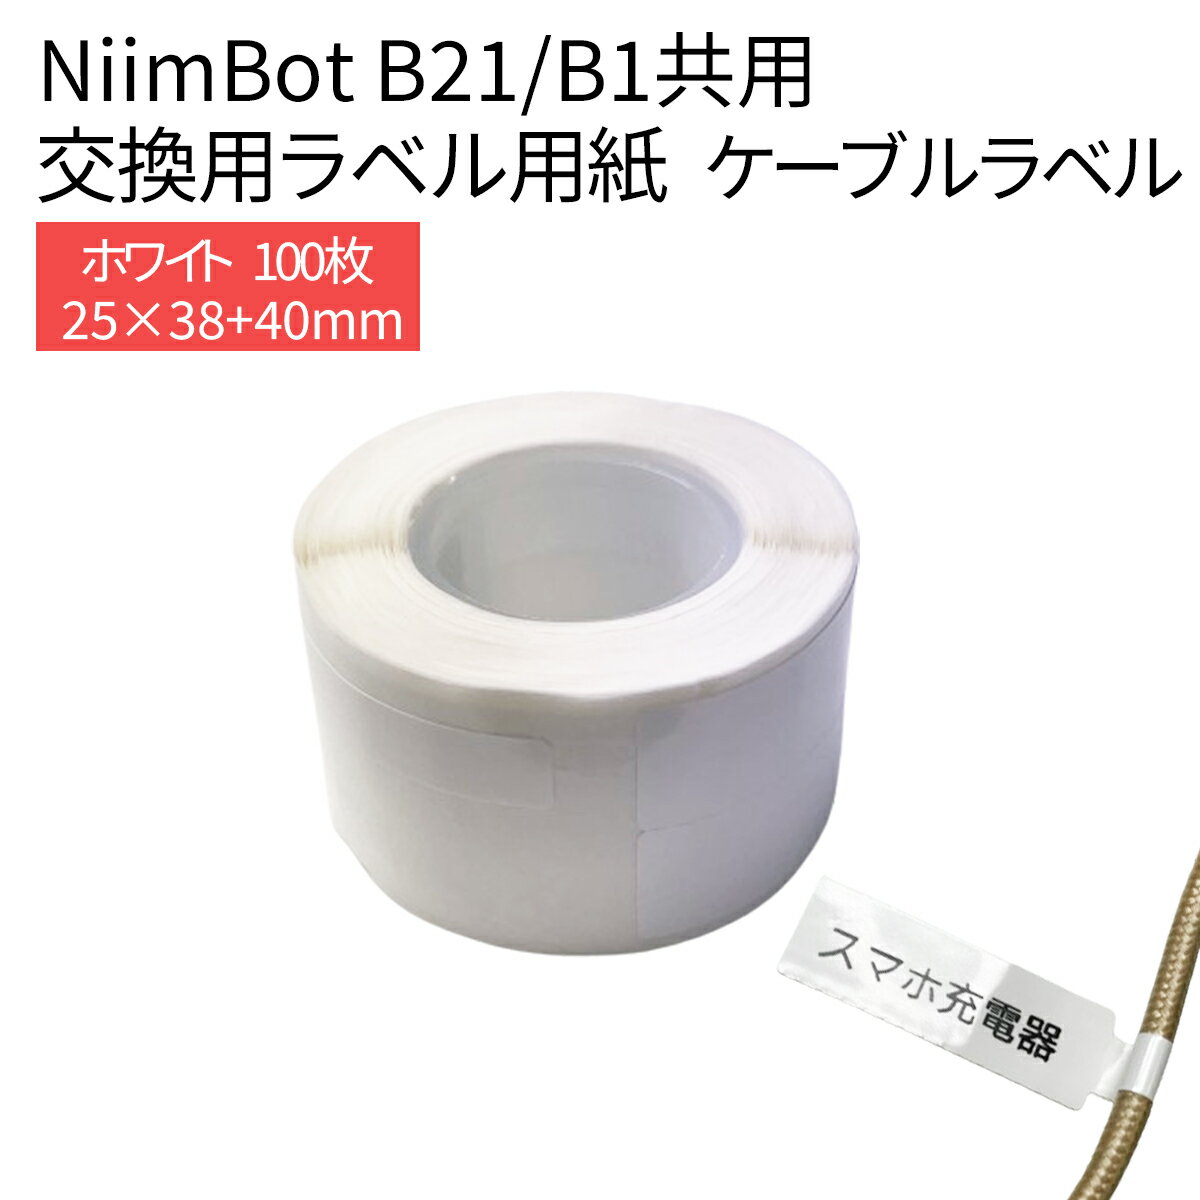 ラベルプリンター B21/B1共用 交換用ラベル用紙 ケーブルラベル 白 ホワイト 25×38+40mm 100枚 ラベルライター ラベルシール 感熱 NiimBot サーマルプリンター